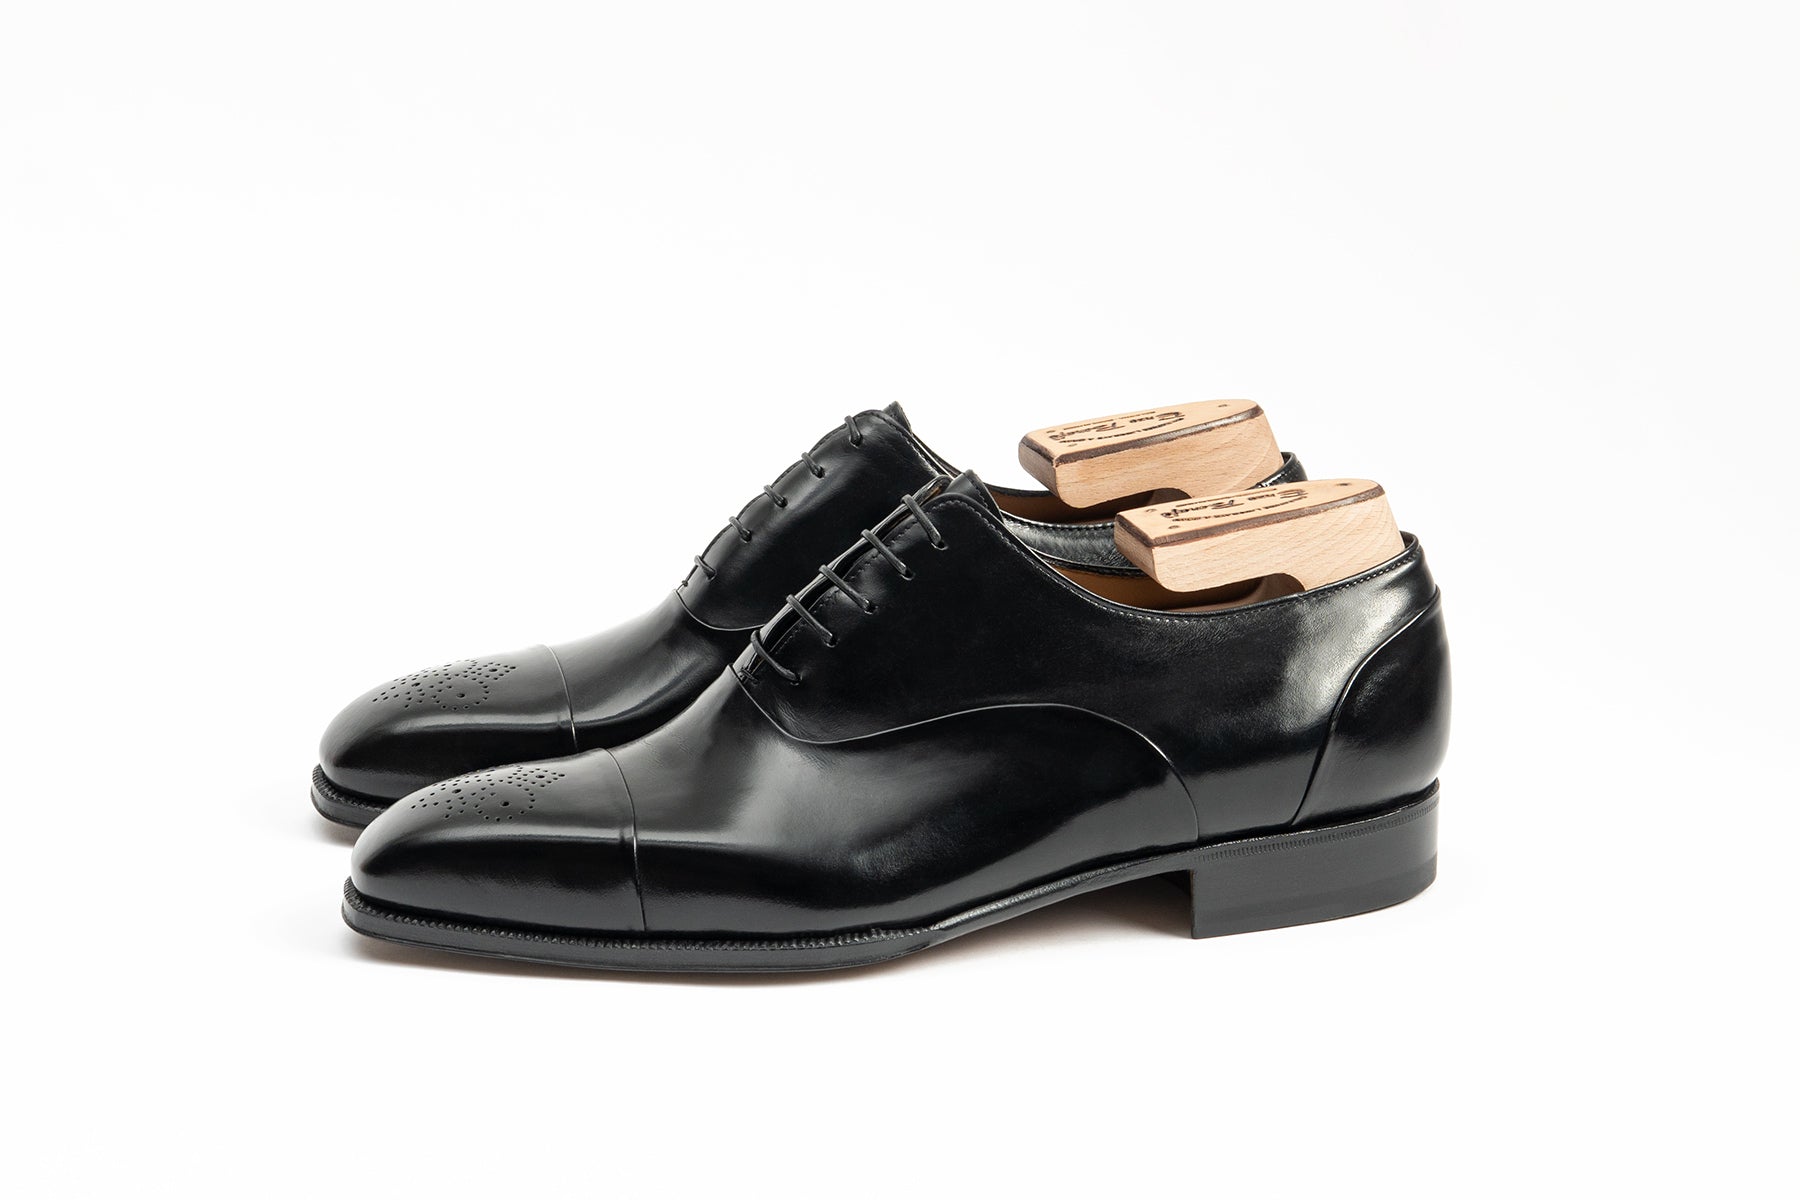 Enzo Bonafe Shoes | The Noble Shoe